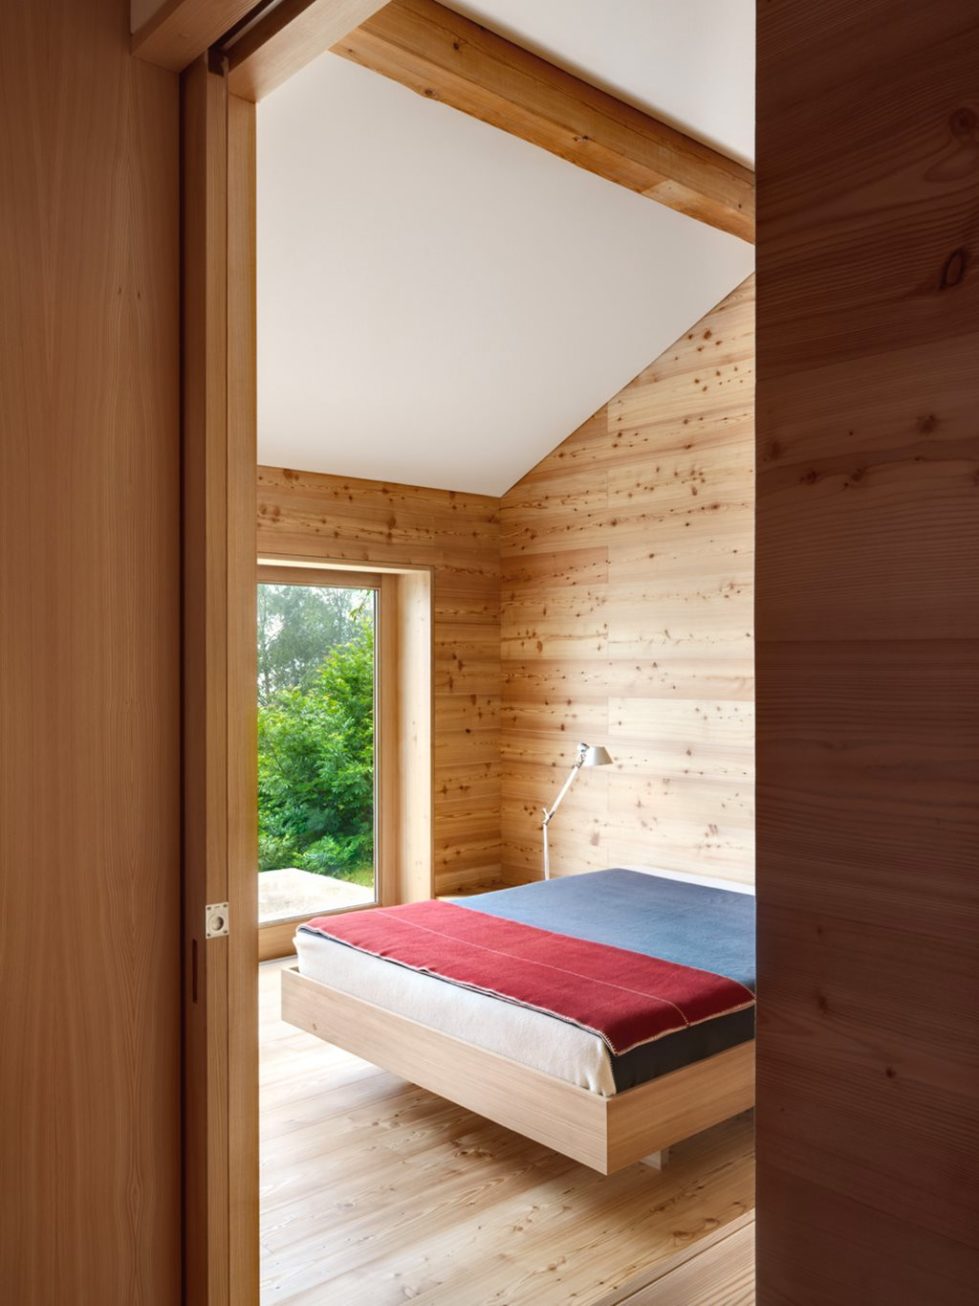 Humble Chalet in Switzerland - Bedroom